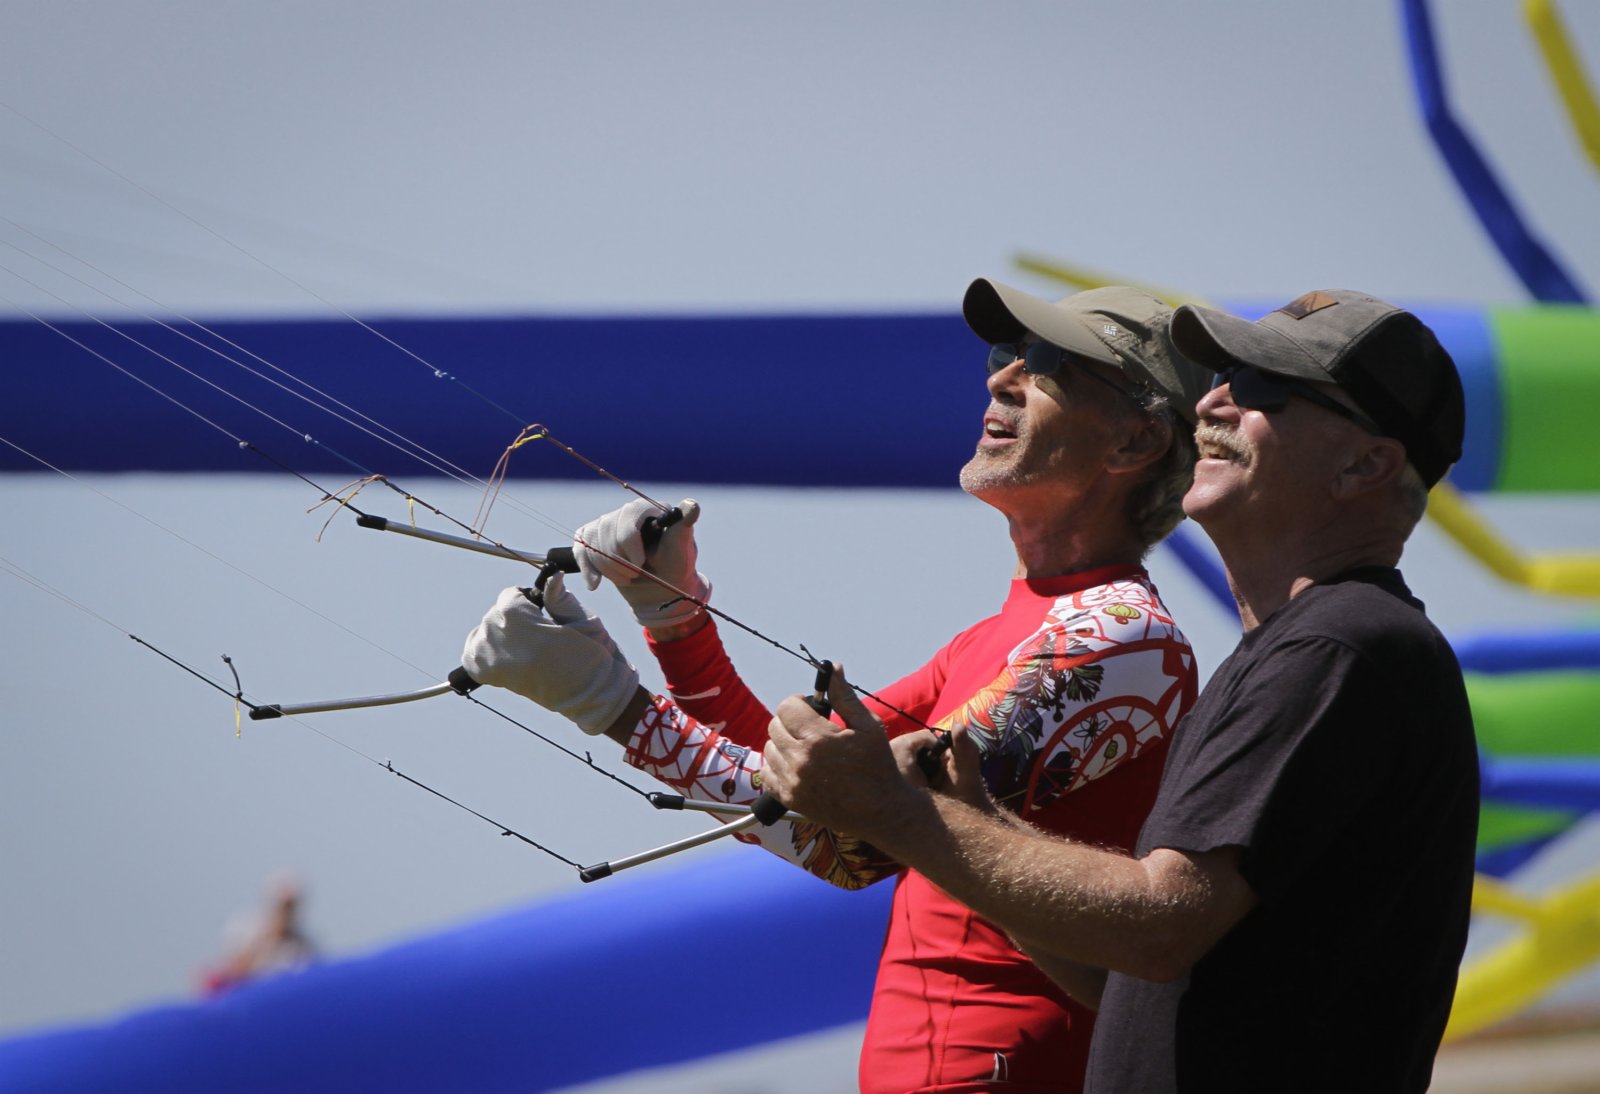 風箏專家展示花式風箏技術。